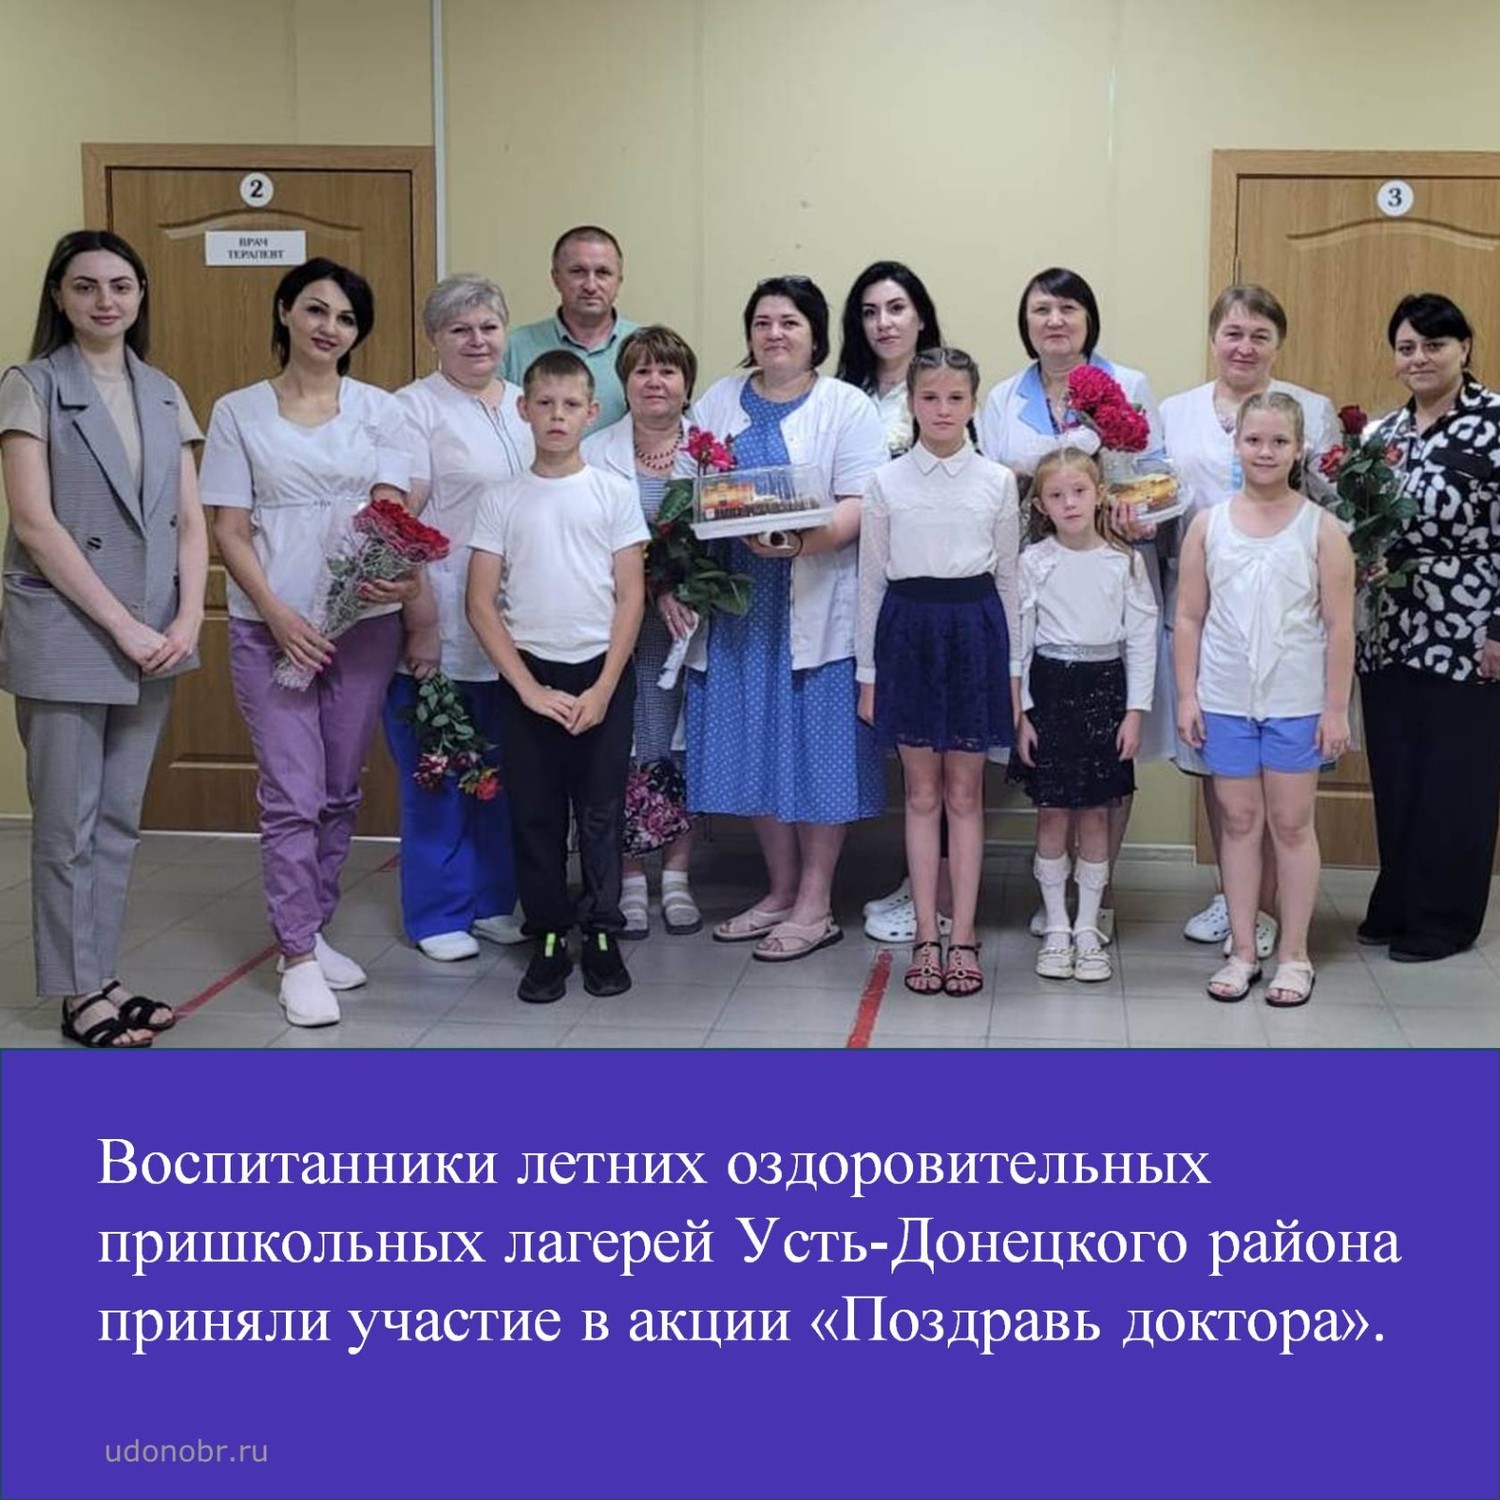 Воспитанники летних оздоровительных пришкольных лагерей Усть-Донецкого района приняли участие в акции «Поздравь доктора»